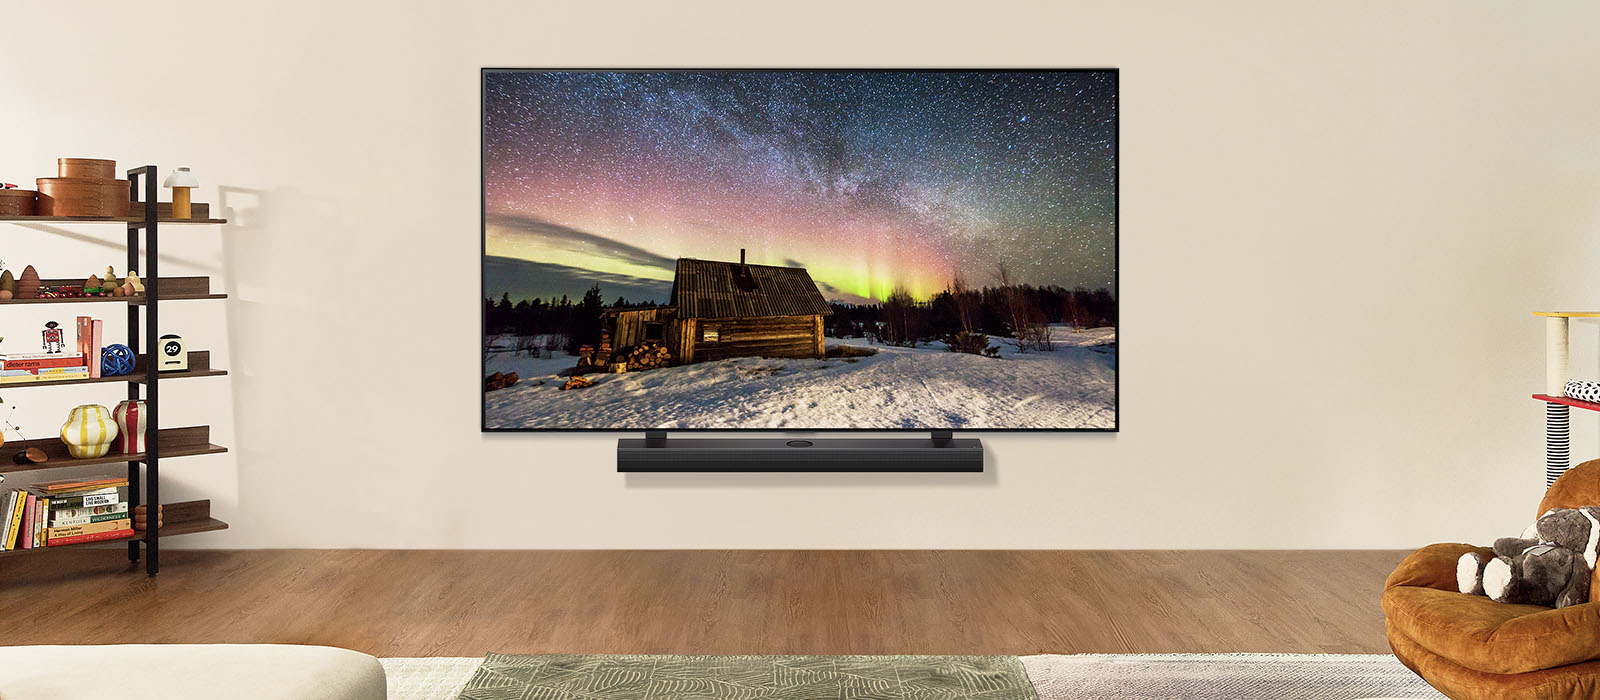 LG TV และ LG Soundbar ในพื้นที่ใช้สอยที่ทันสมัยในเวลากลางวัน ภาพหน้าจอของแสงออโรร่า บอเรลลิส จะแสดงด้วยระดับความสว่างที่เหมาะสมที่สุด